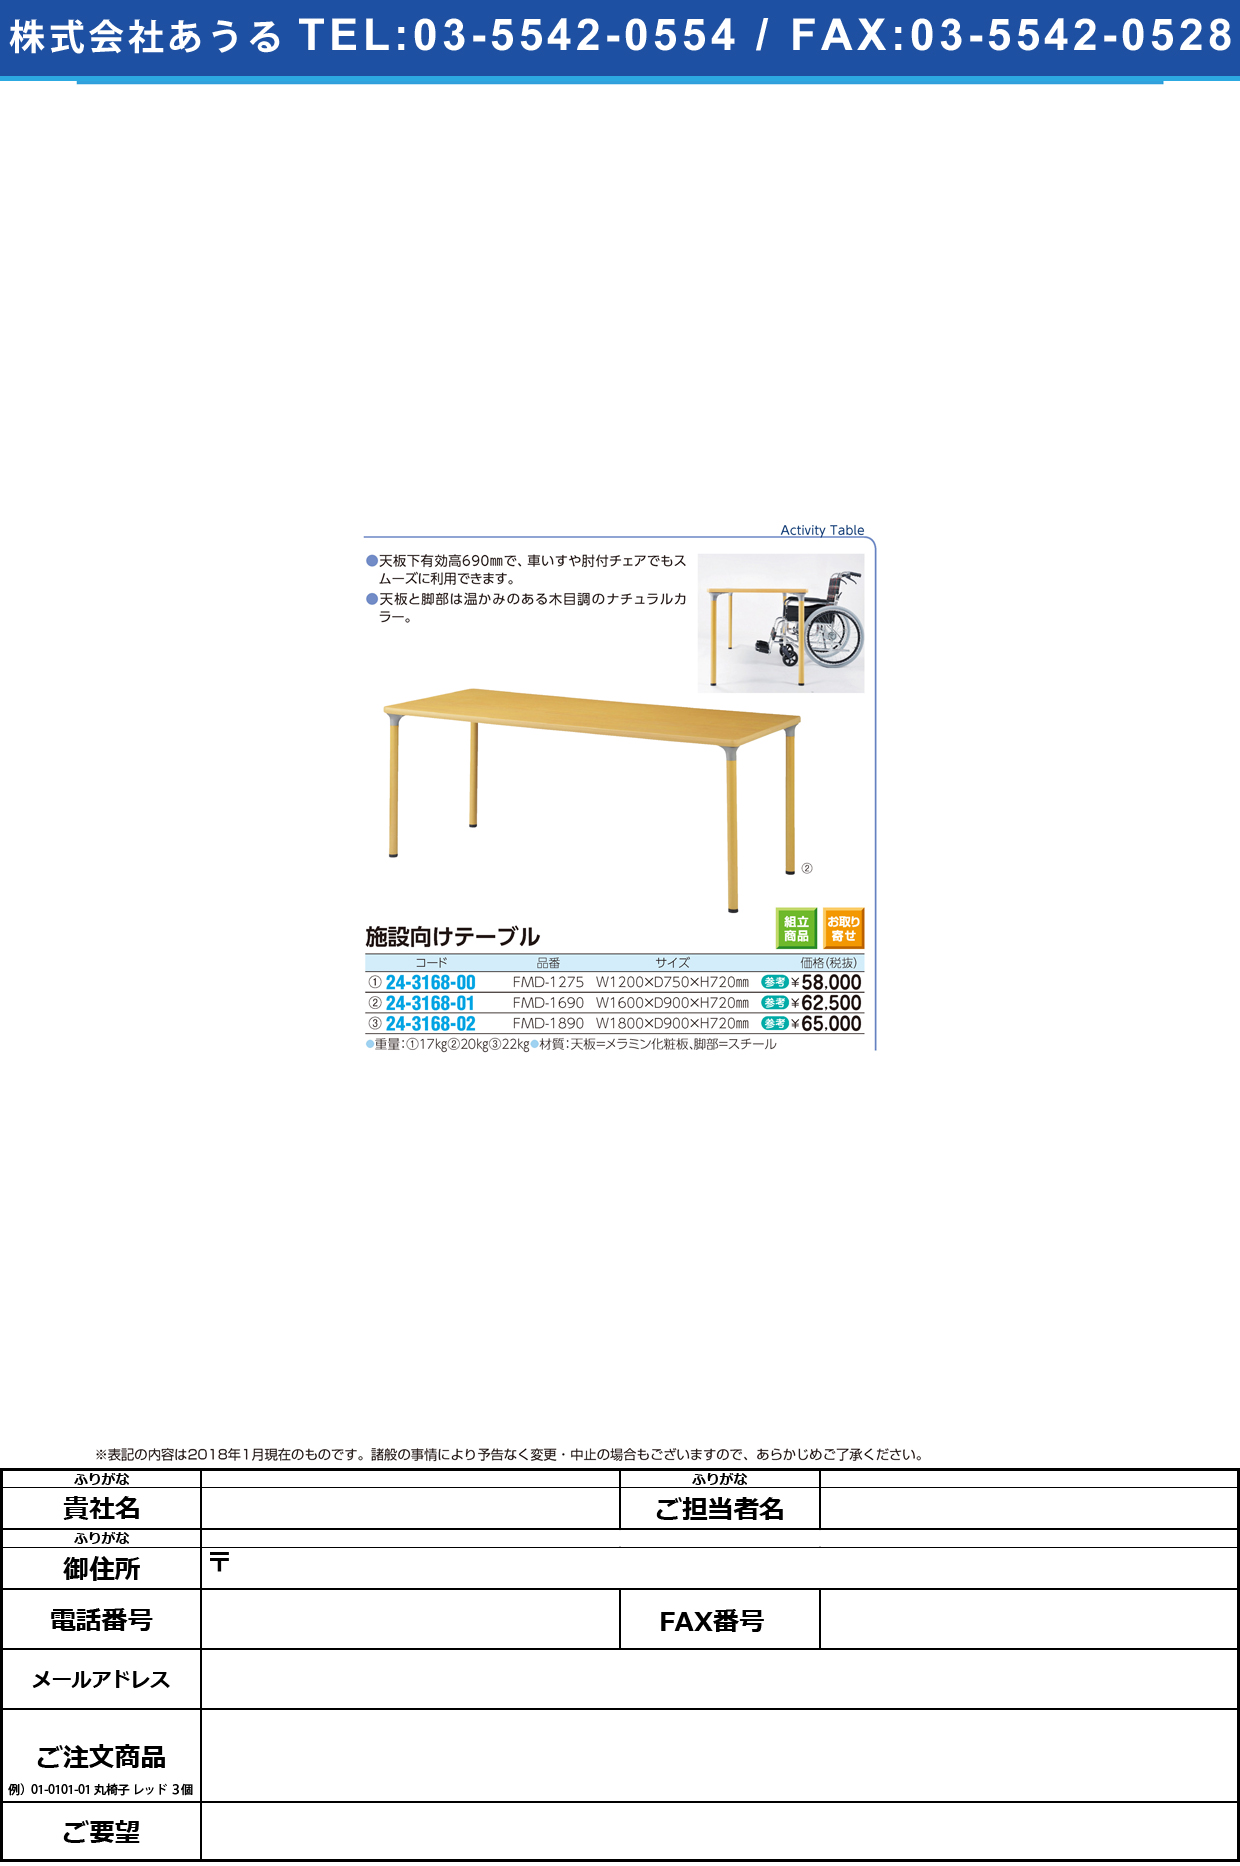 (24-3168-01)施設向けテーブル FMD-1690(160X90X72) ｼｾﾂﾑｹﾃｰﾌﾞﾙ【1台単位】【2018年カタログ商品】